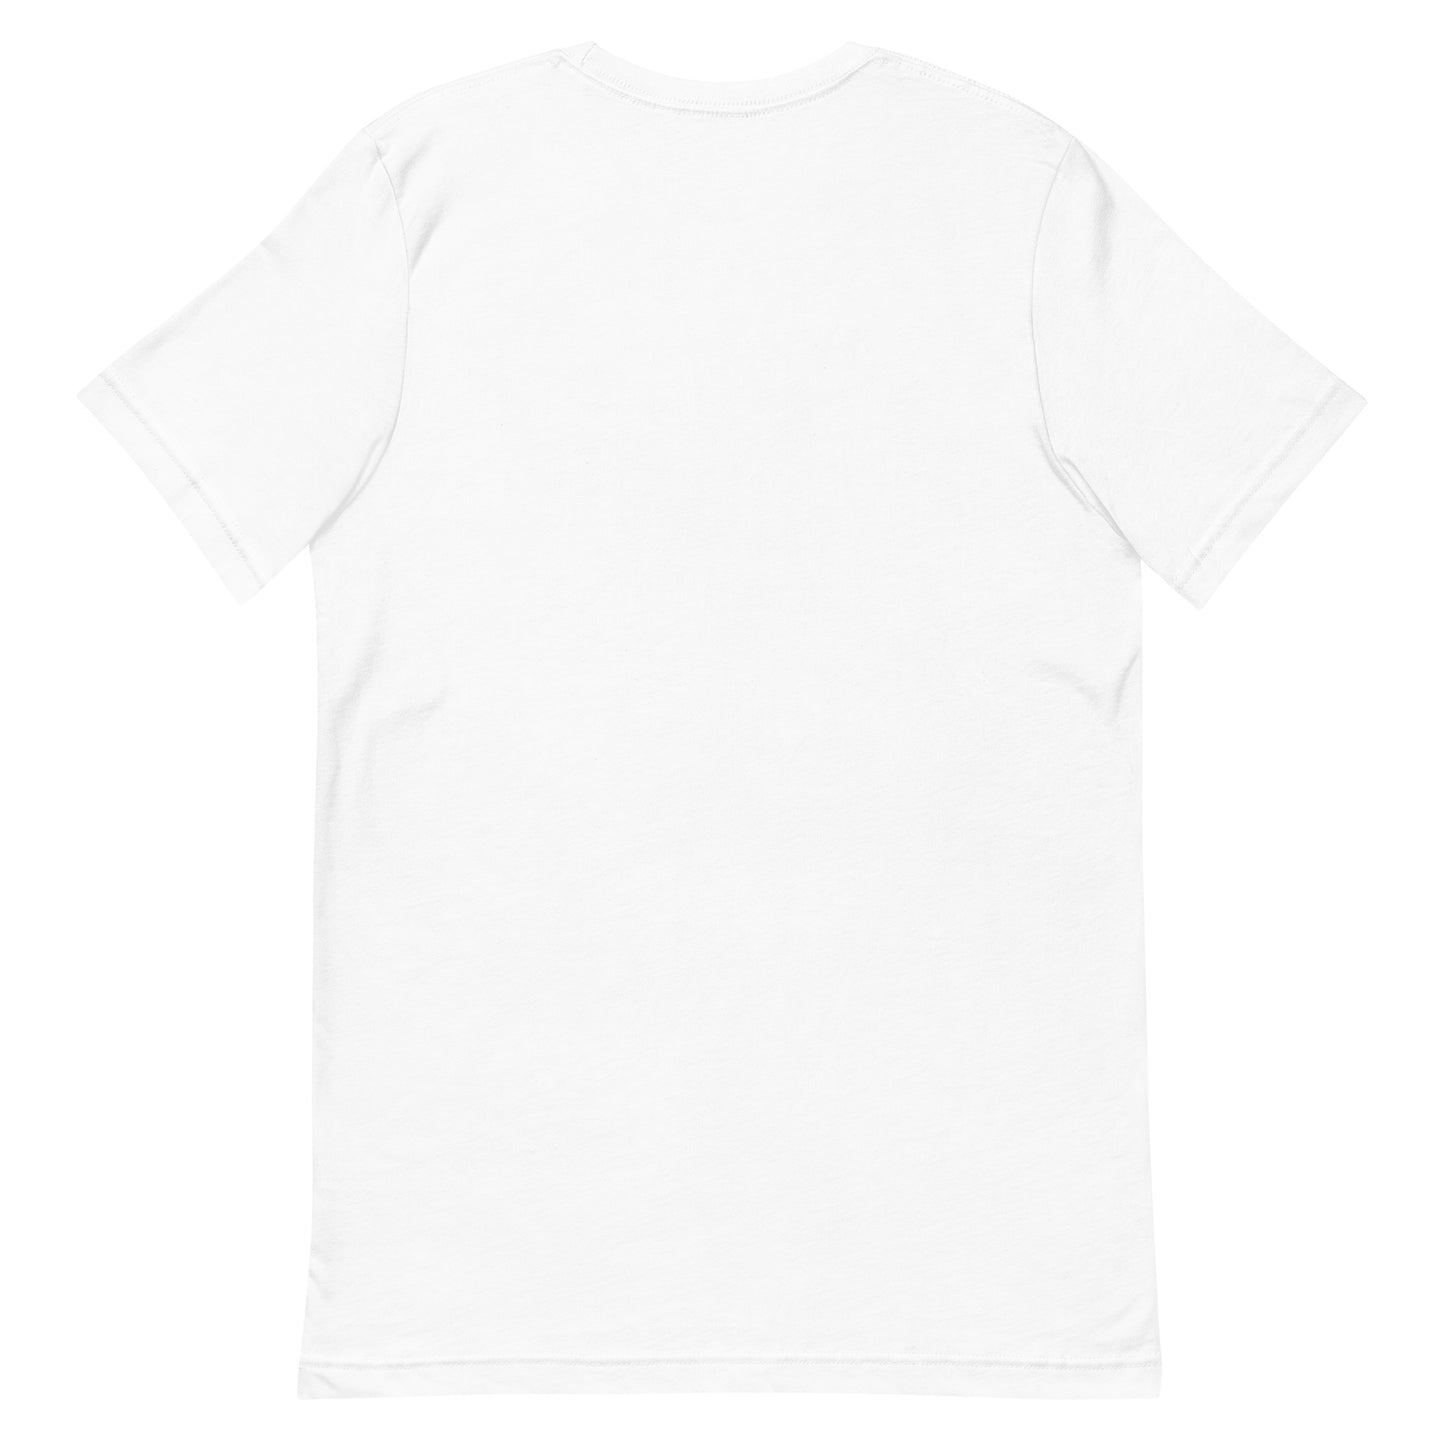 Unisex t-shirt "28 SUKUI AGE" White